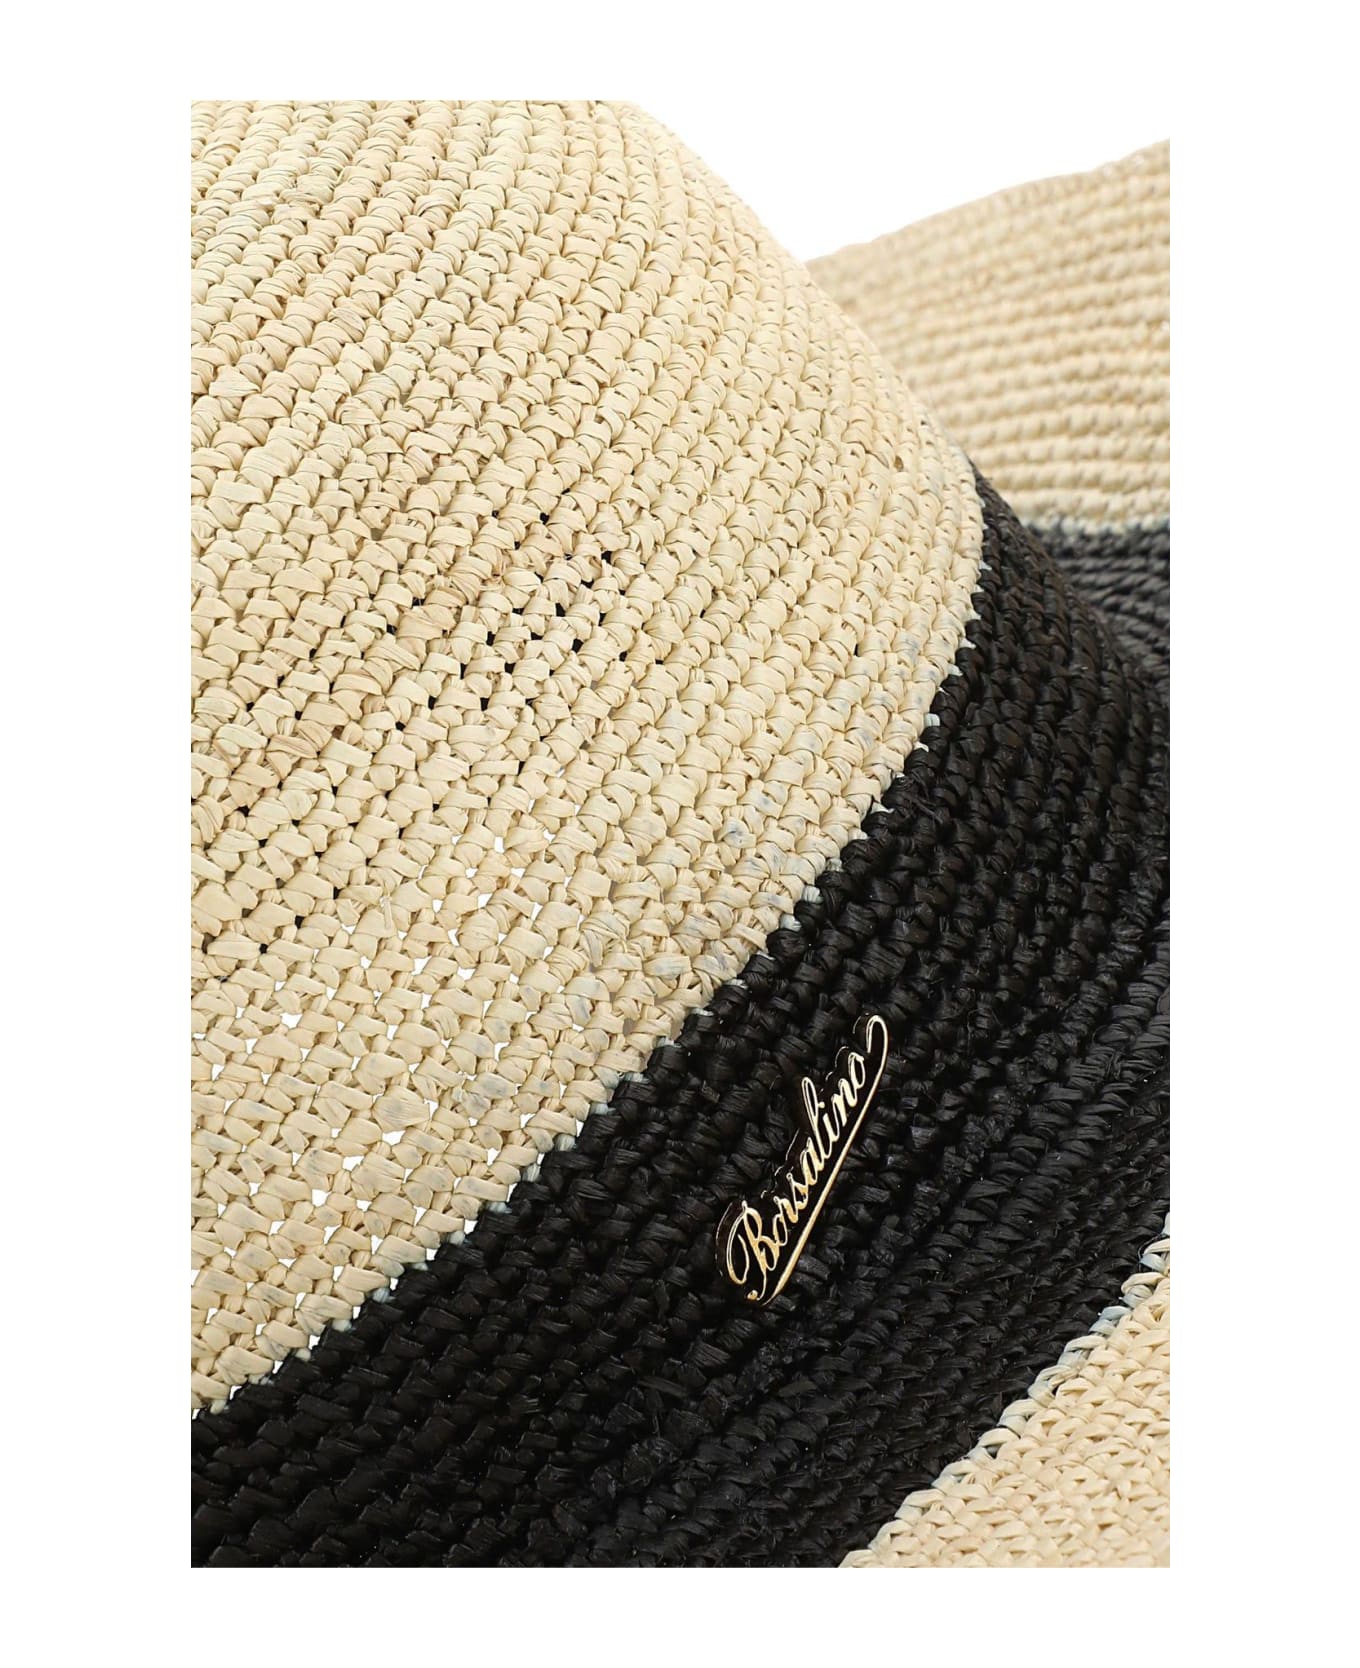 Borsalino Straw Hat - Nero 帽子